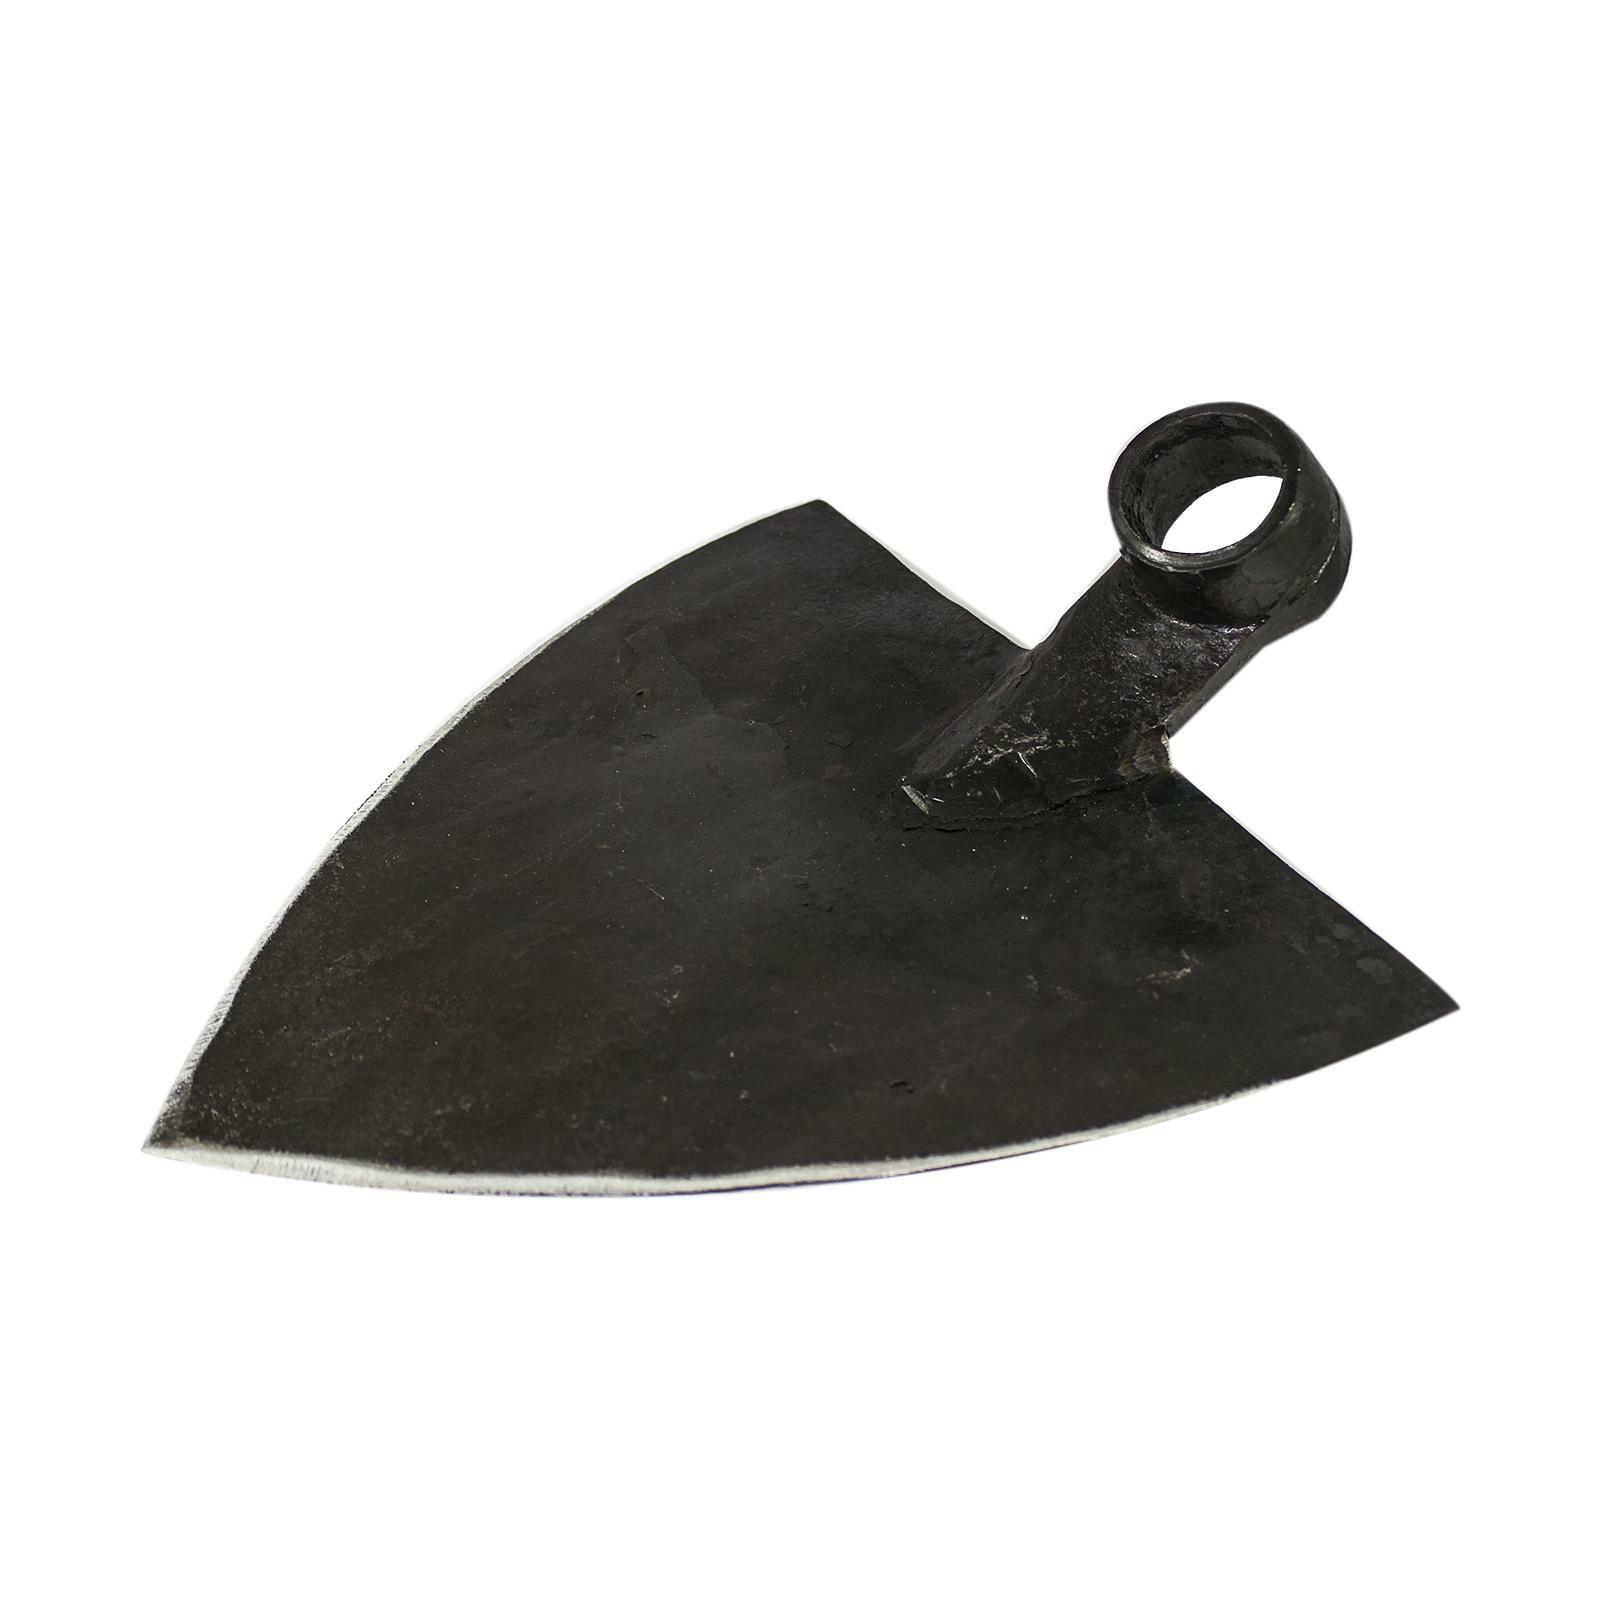 leonelli zappa frosinone a punta per solchi in acciaio 1,3 kg